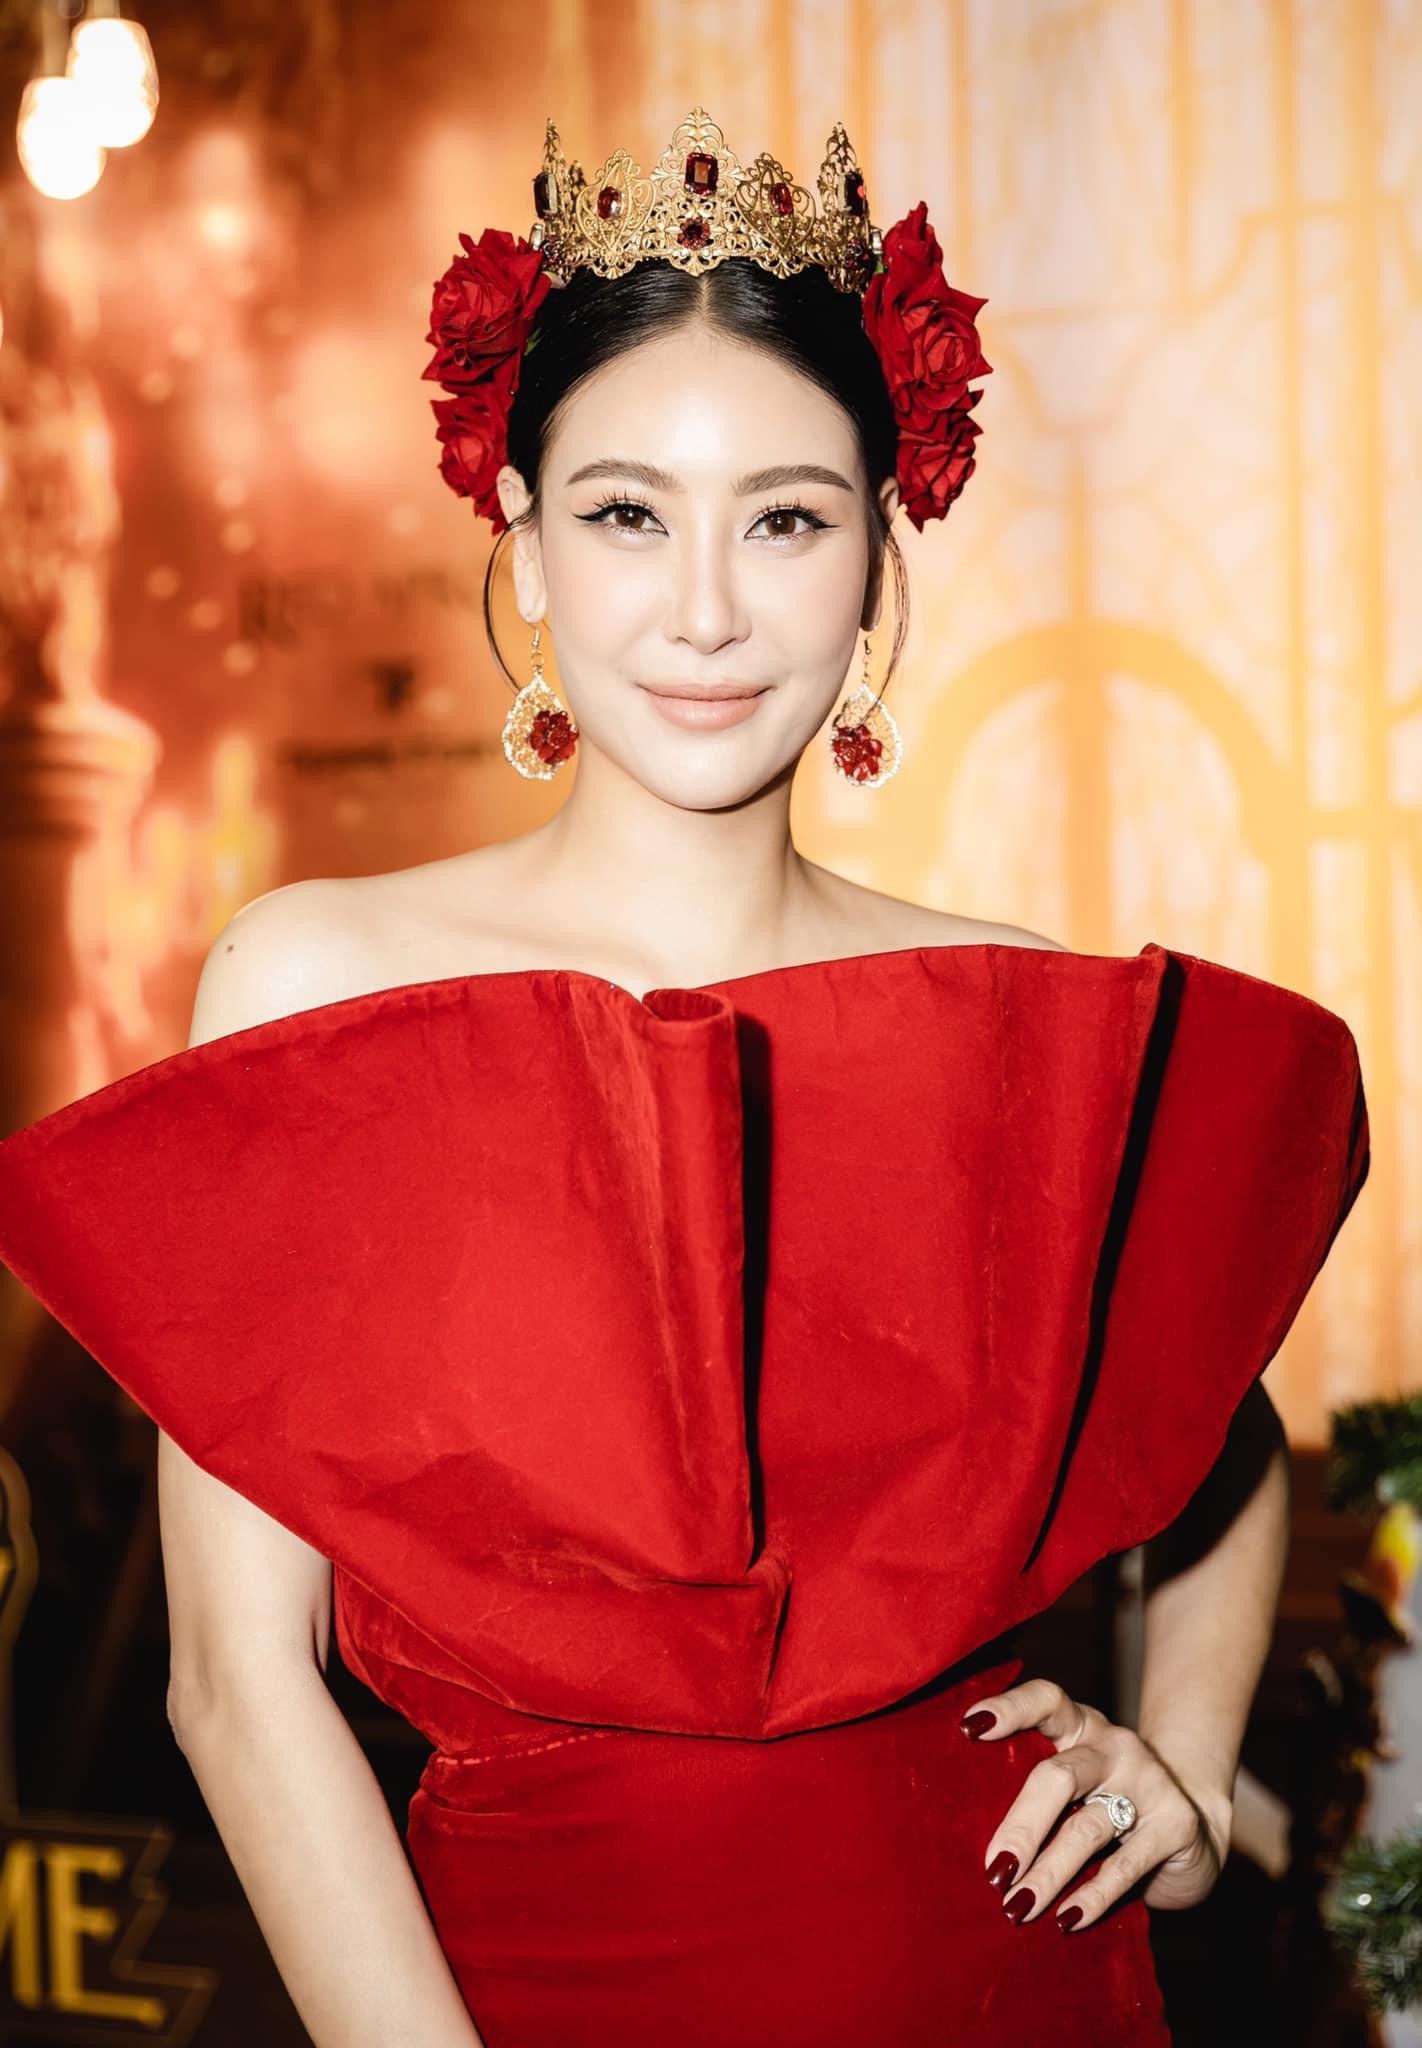 Hoa hậu Hà Kiều Anh ở tuổi 45: Từ nhan sắc đến vóc dáng 'đỉnh cao' khiến đàn em ngưỡng mộ - Ảnh 12.